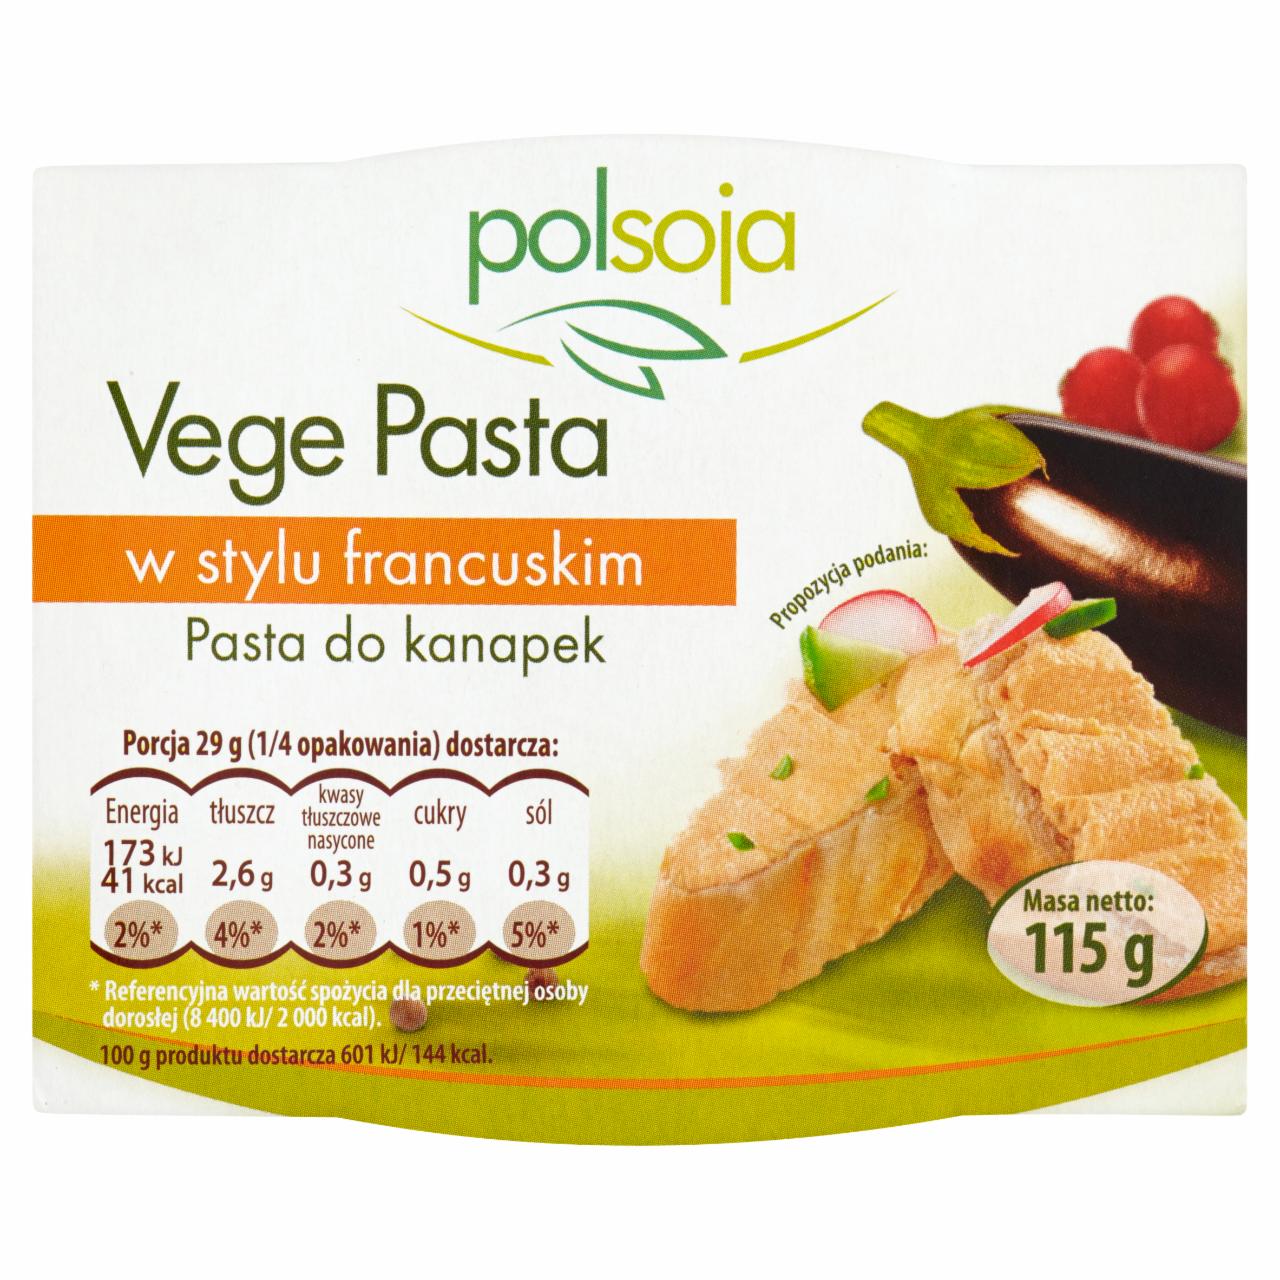 Zdjęcia - Polsoja Vege Pasta w stylu francuskim Pasta do kanapek 115 g